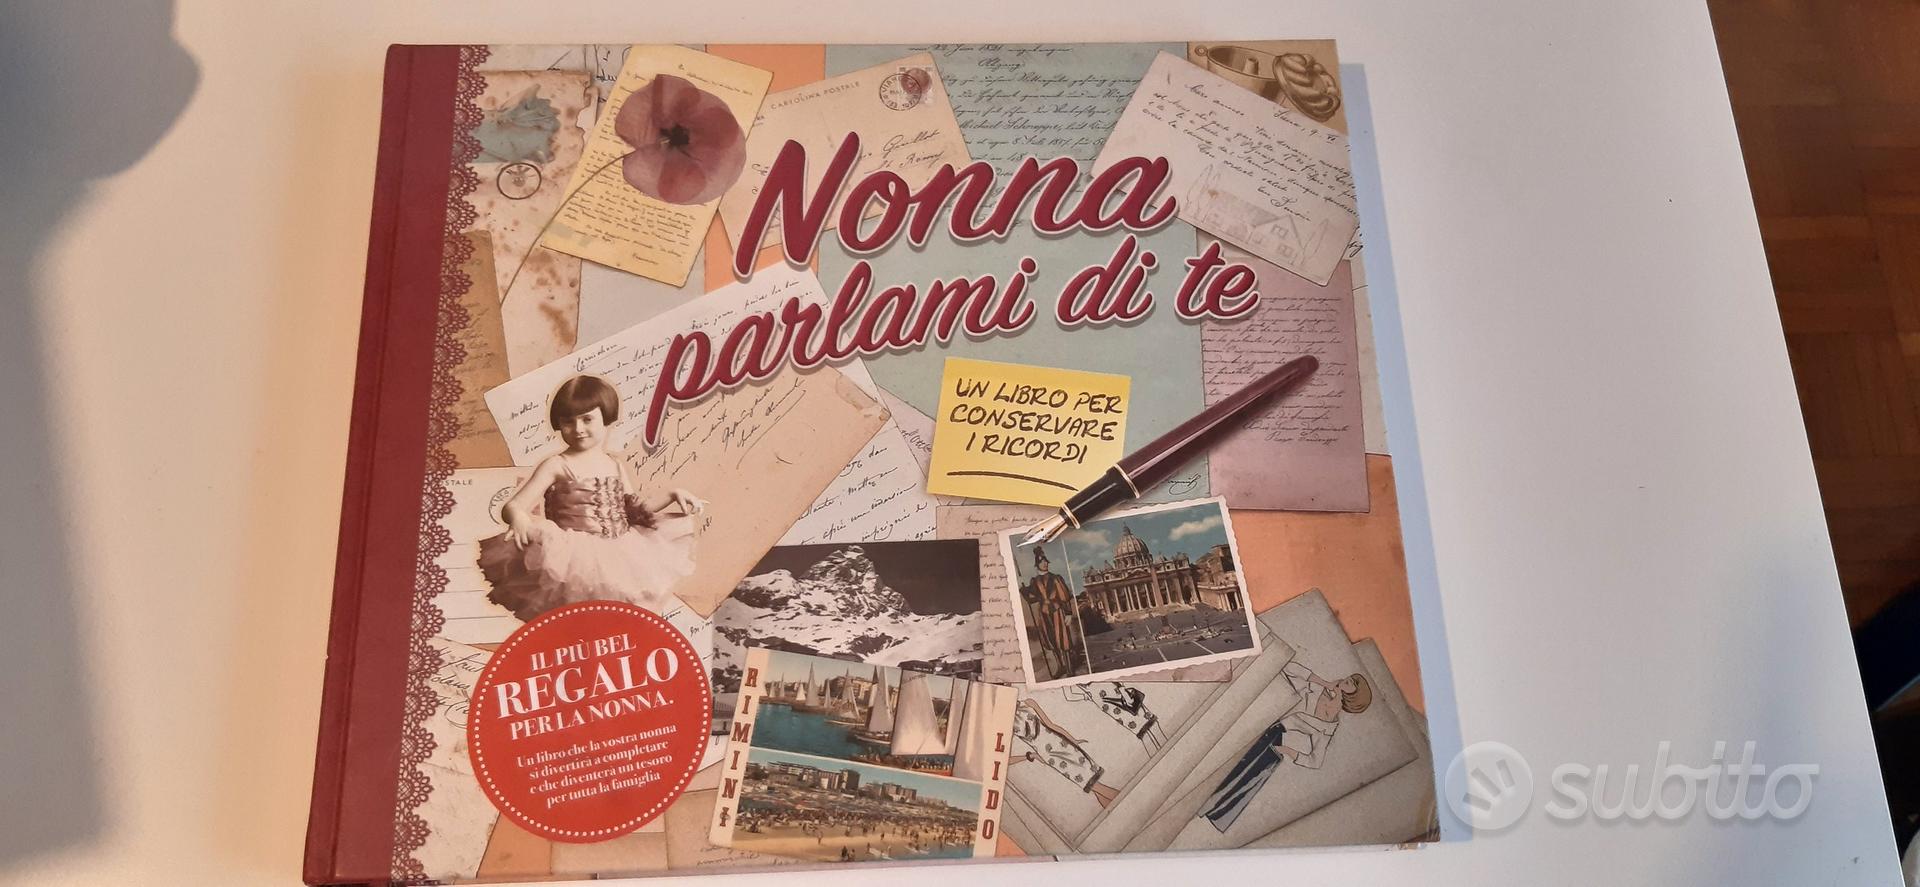 Diario della nonna - Collezionismo In vendita a Milano